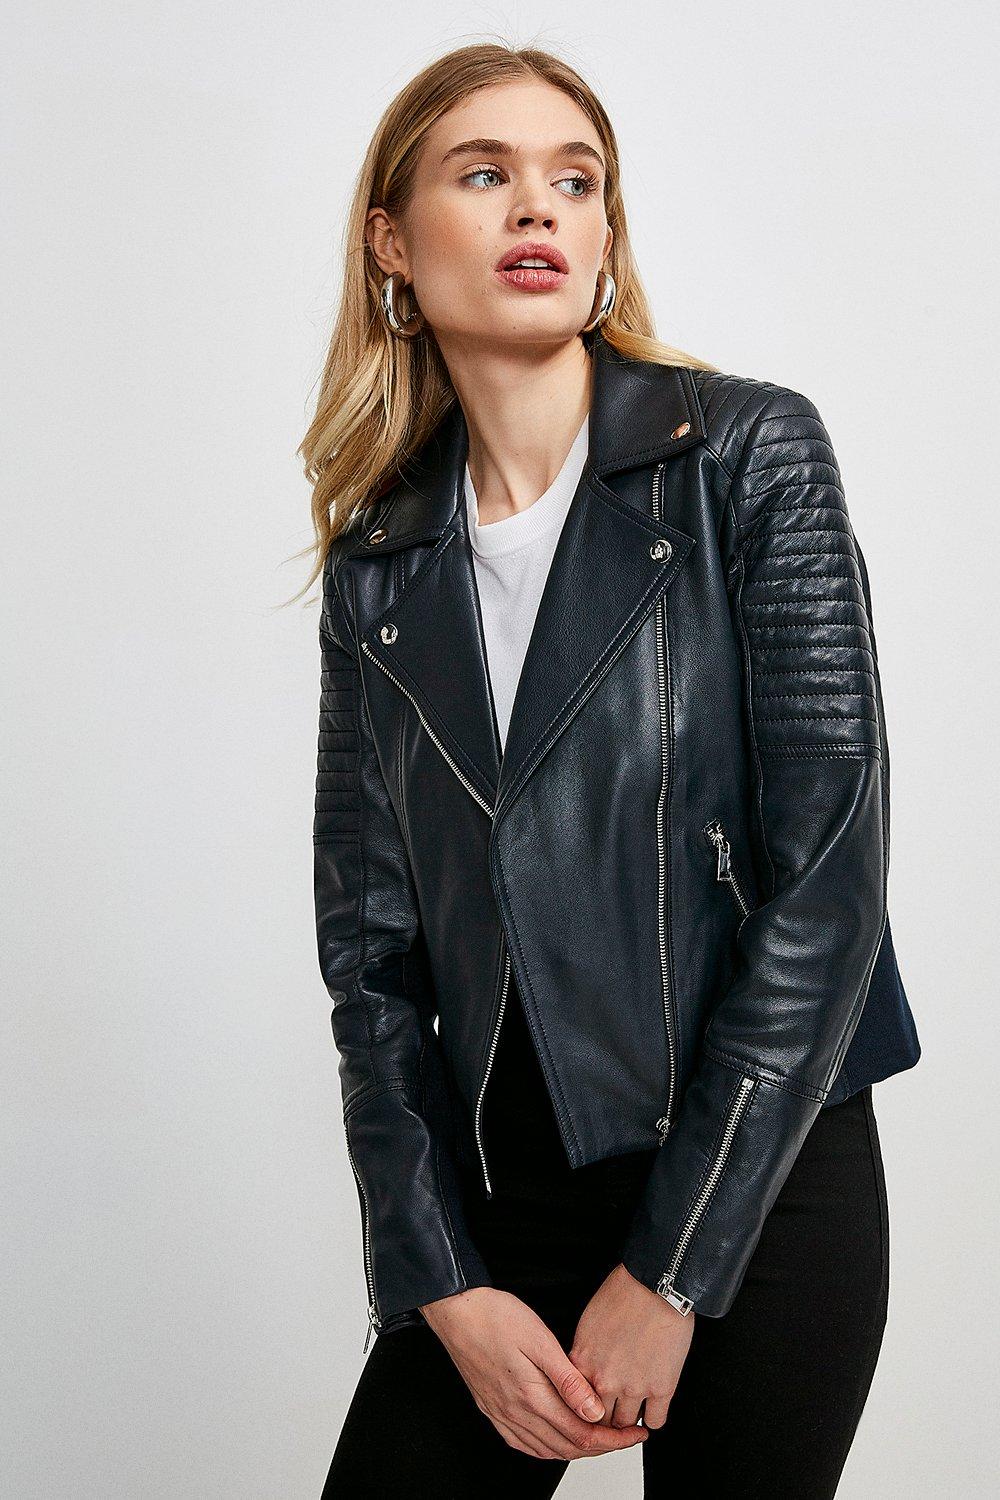 Karen Millen Leather Jacket Top Sellers, 59% OFF | www ...